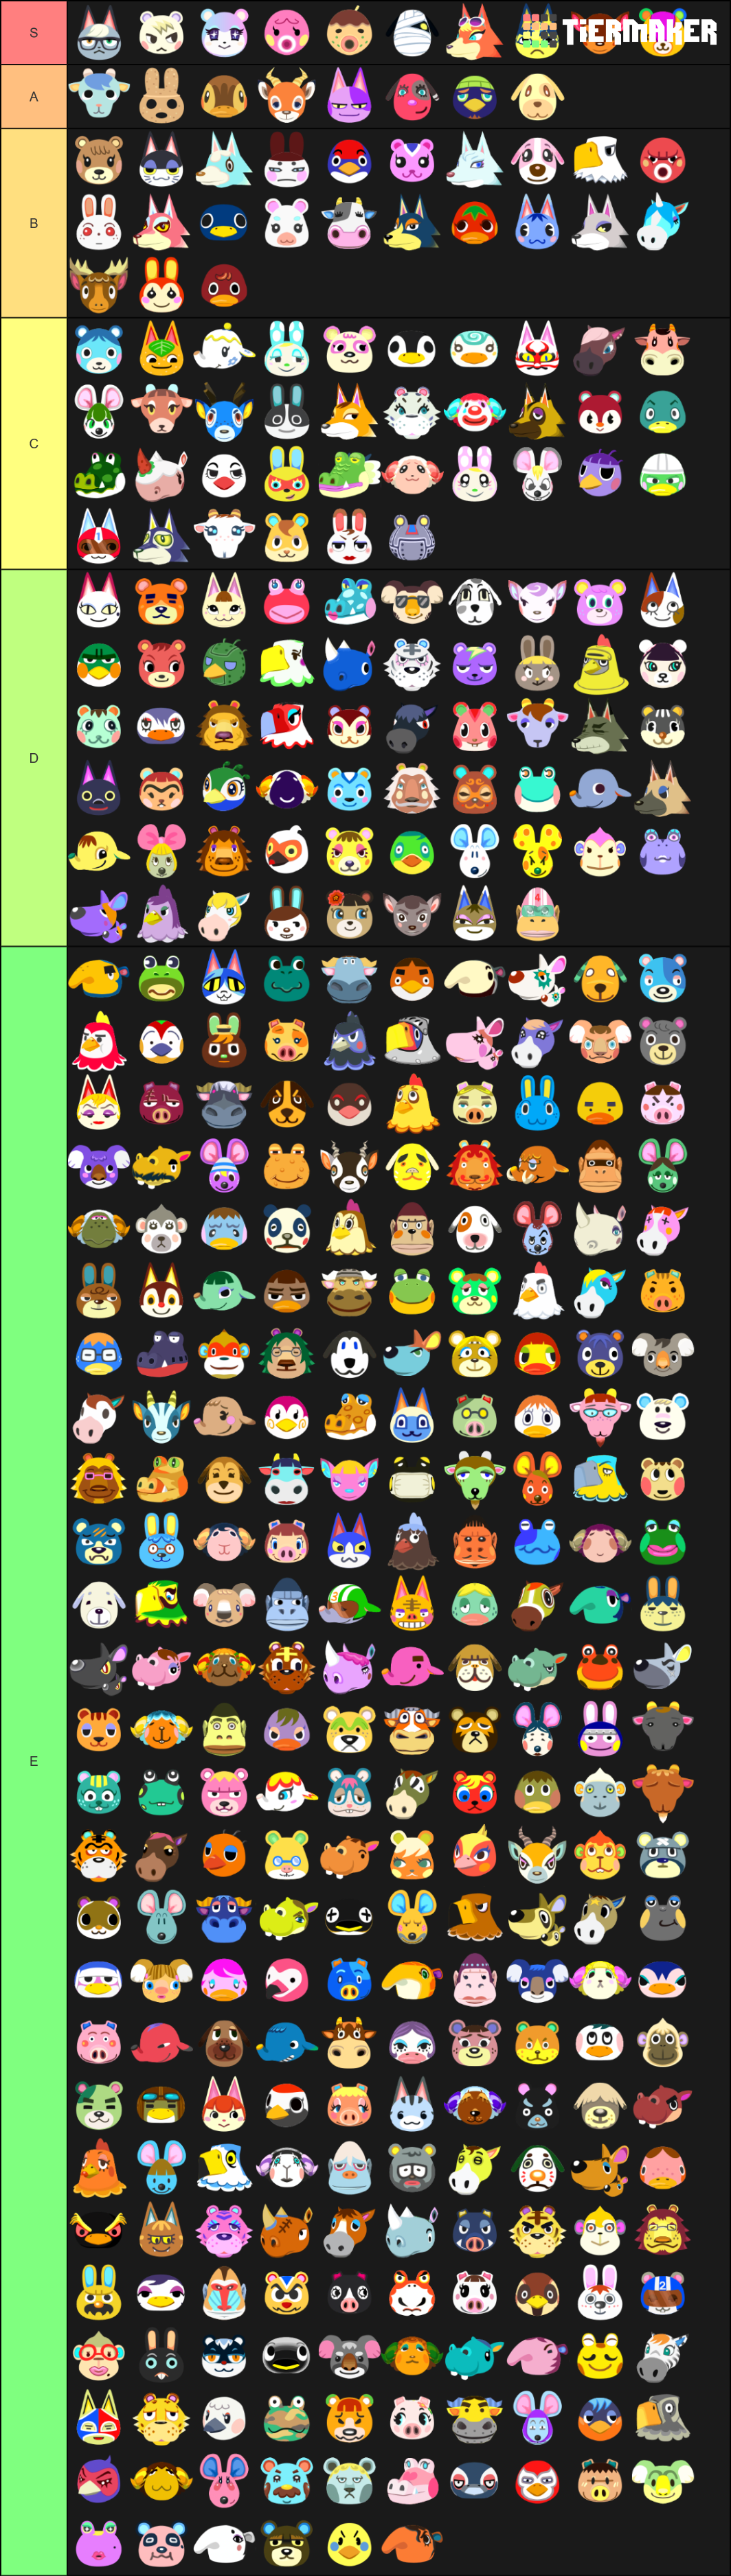 Animal Crossing Tier List Maker / animal crossing Tier List Maker